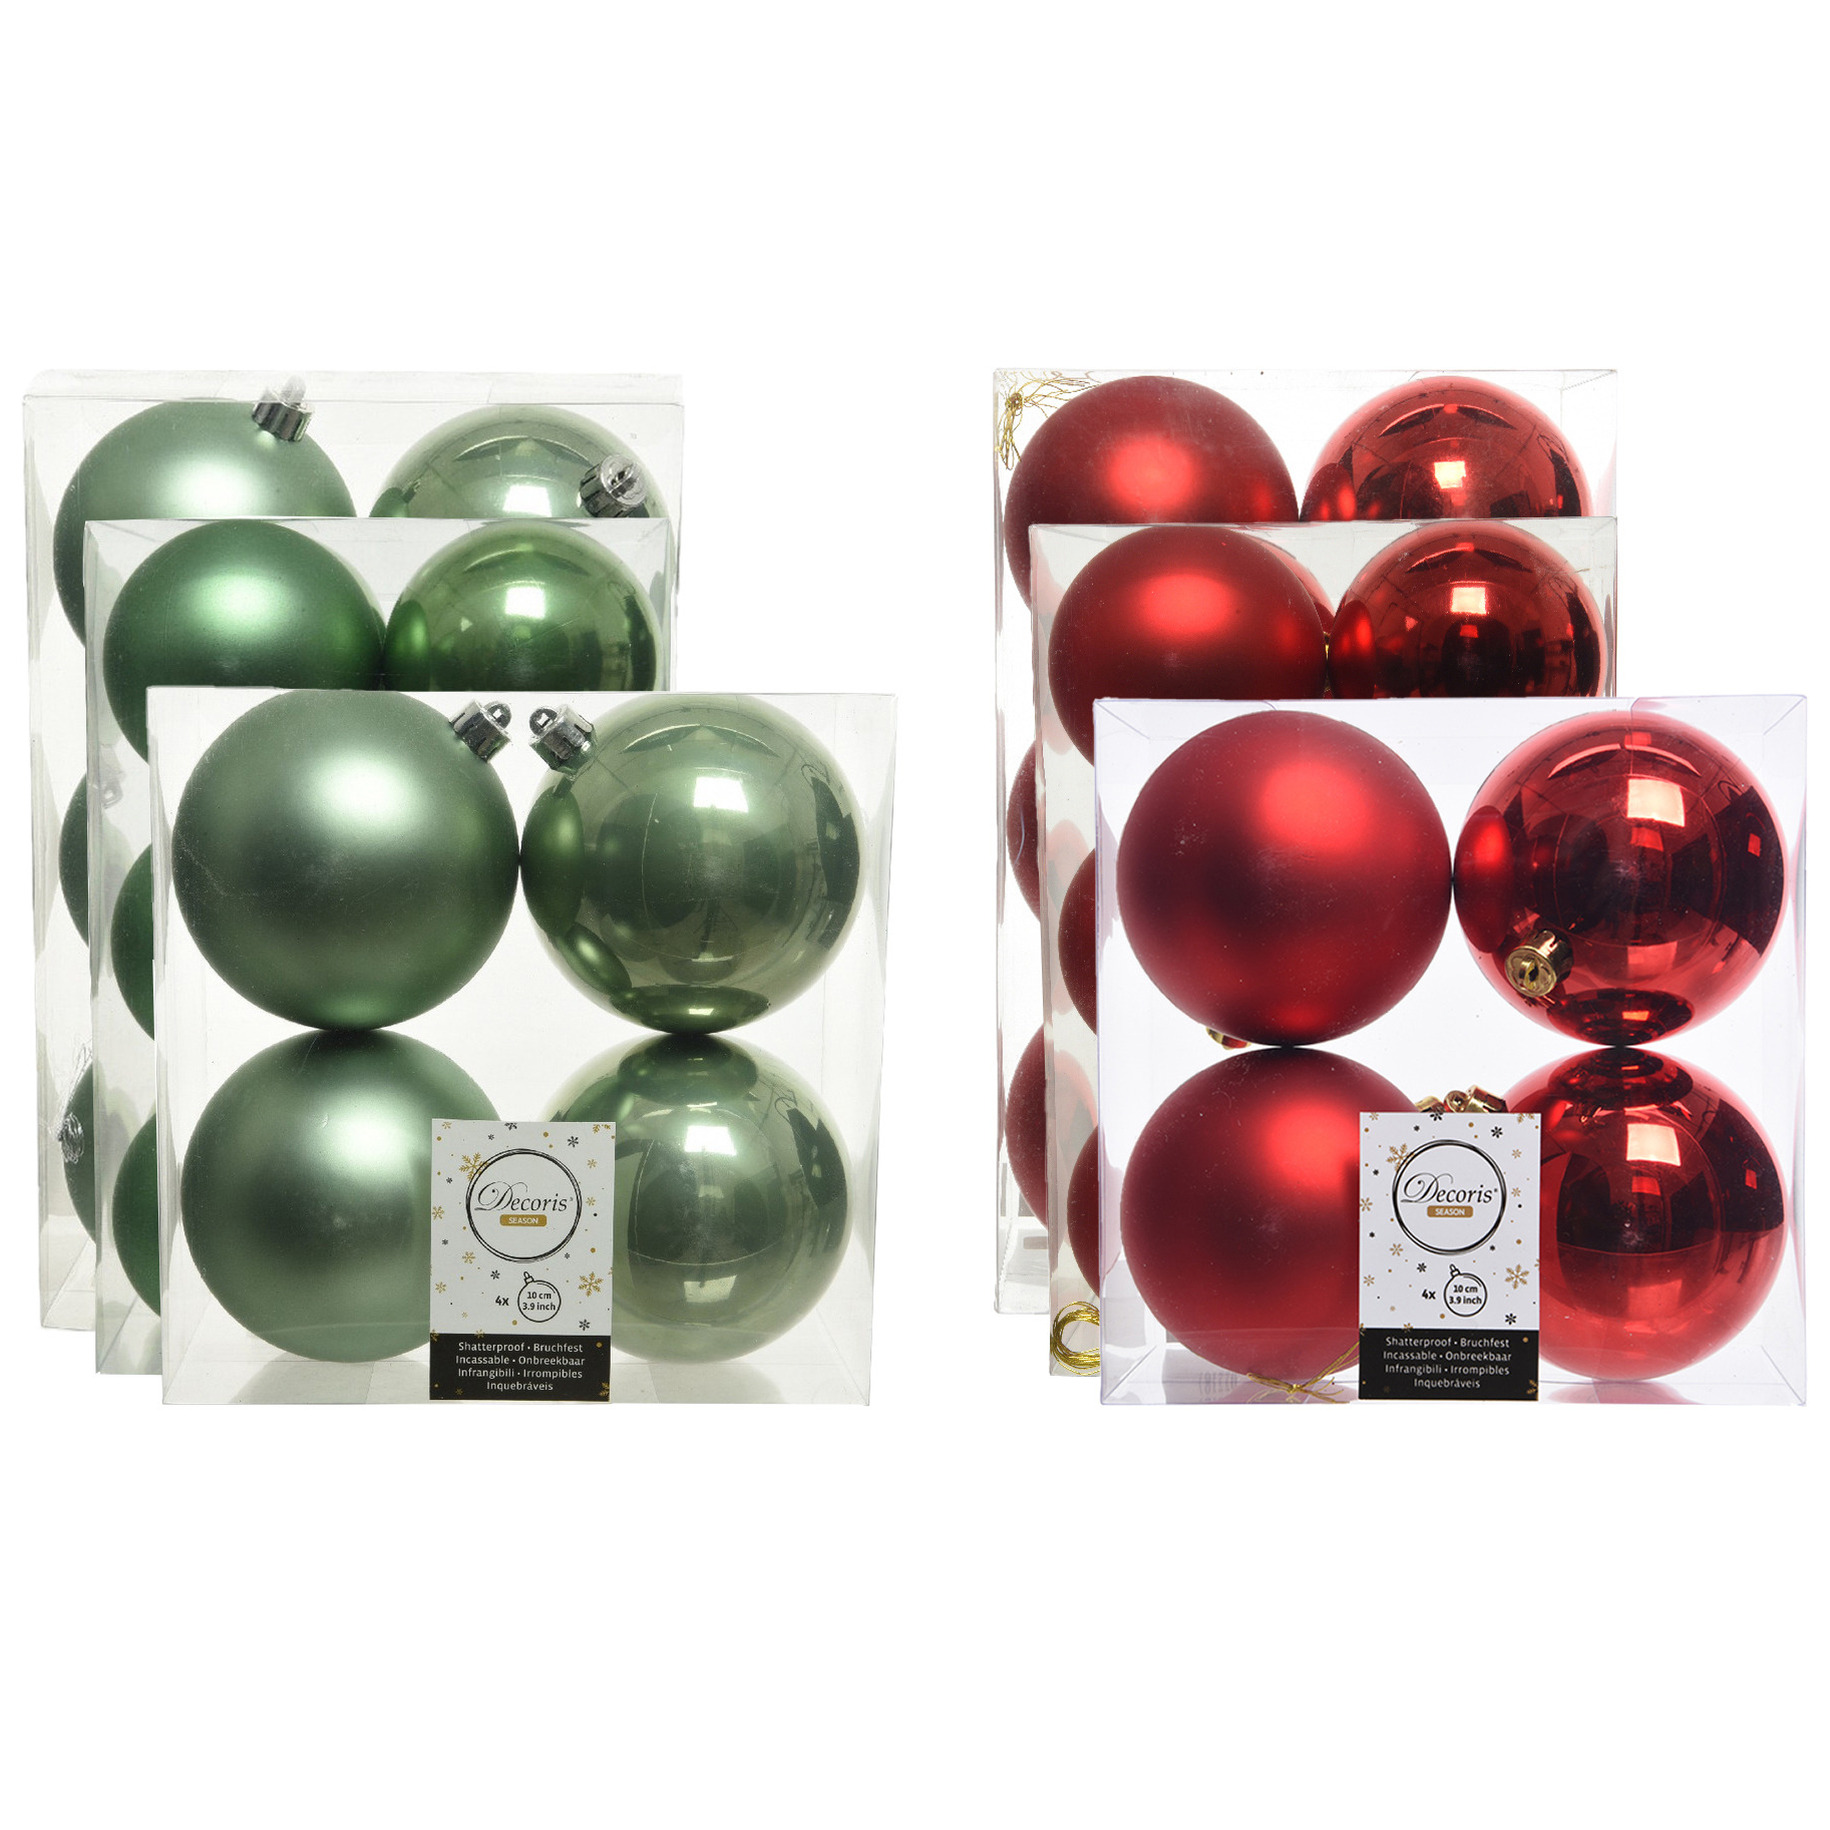 Kerstversiering kunststof kerstballen mix rood-salie groen 6-8-10 cm pakket van 44x stuks